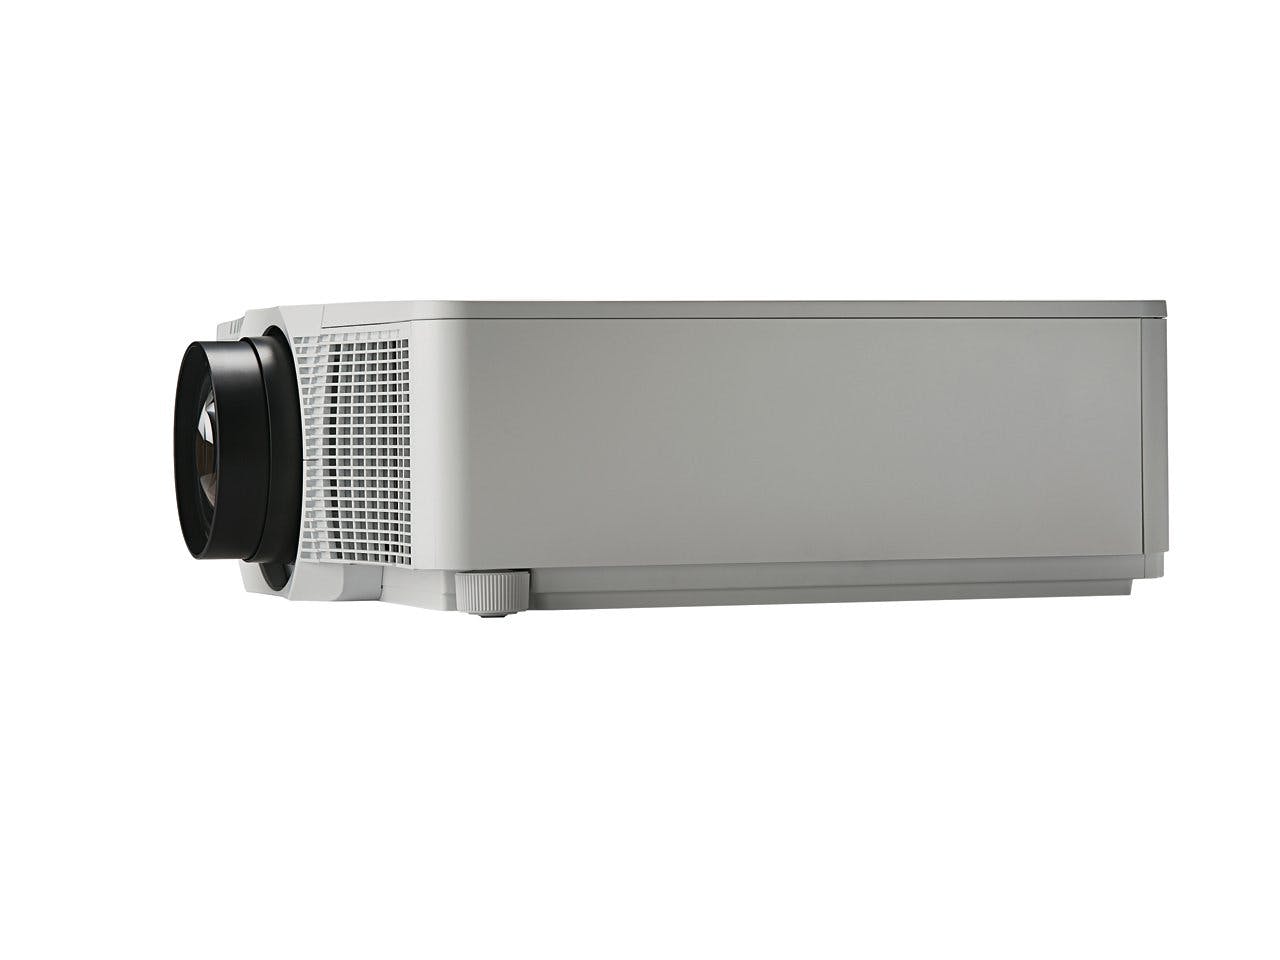 Christie DWX951-Q 1DLP projectors | 121-027100-XX (white) | 121-027111-XX (black)